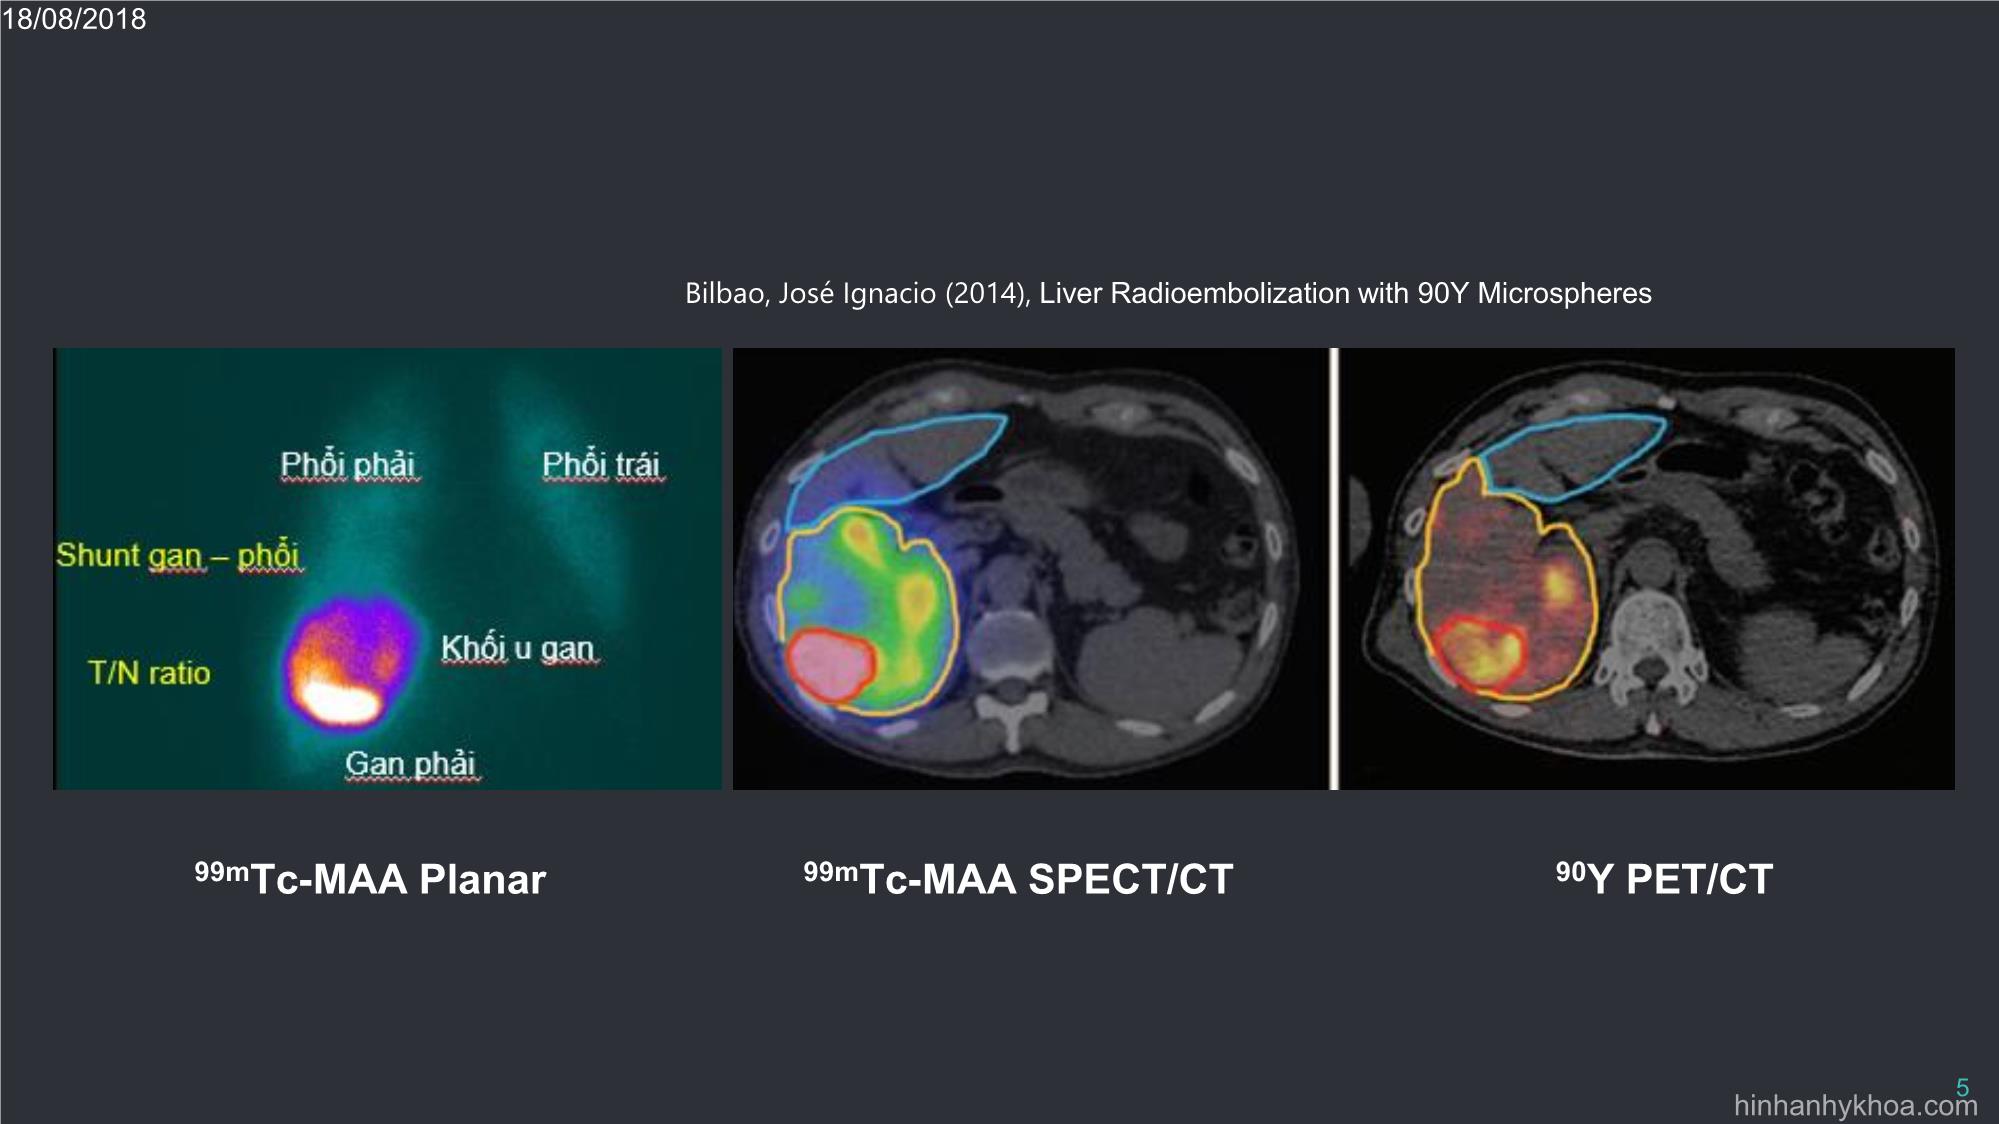 Đặc điểm xạ hình mô phỏng 99MTC - Maa planar và spect / ct đối chiếu xạ hình 90y pet / ct sau điều trị tắc mạch xạ trị ung thư biểu mô tế bào gan trang 5